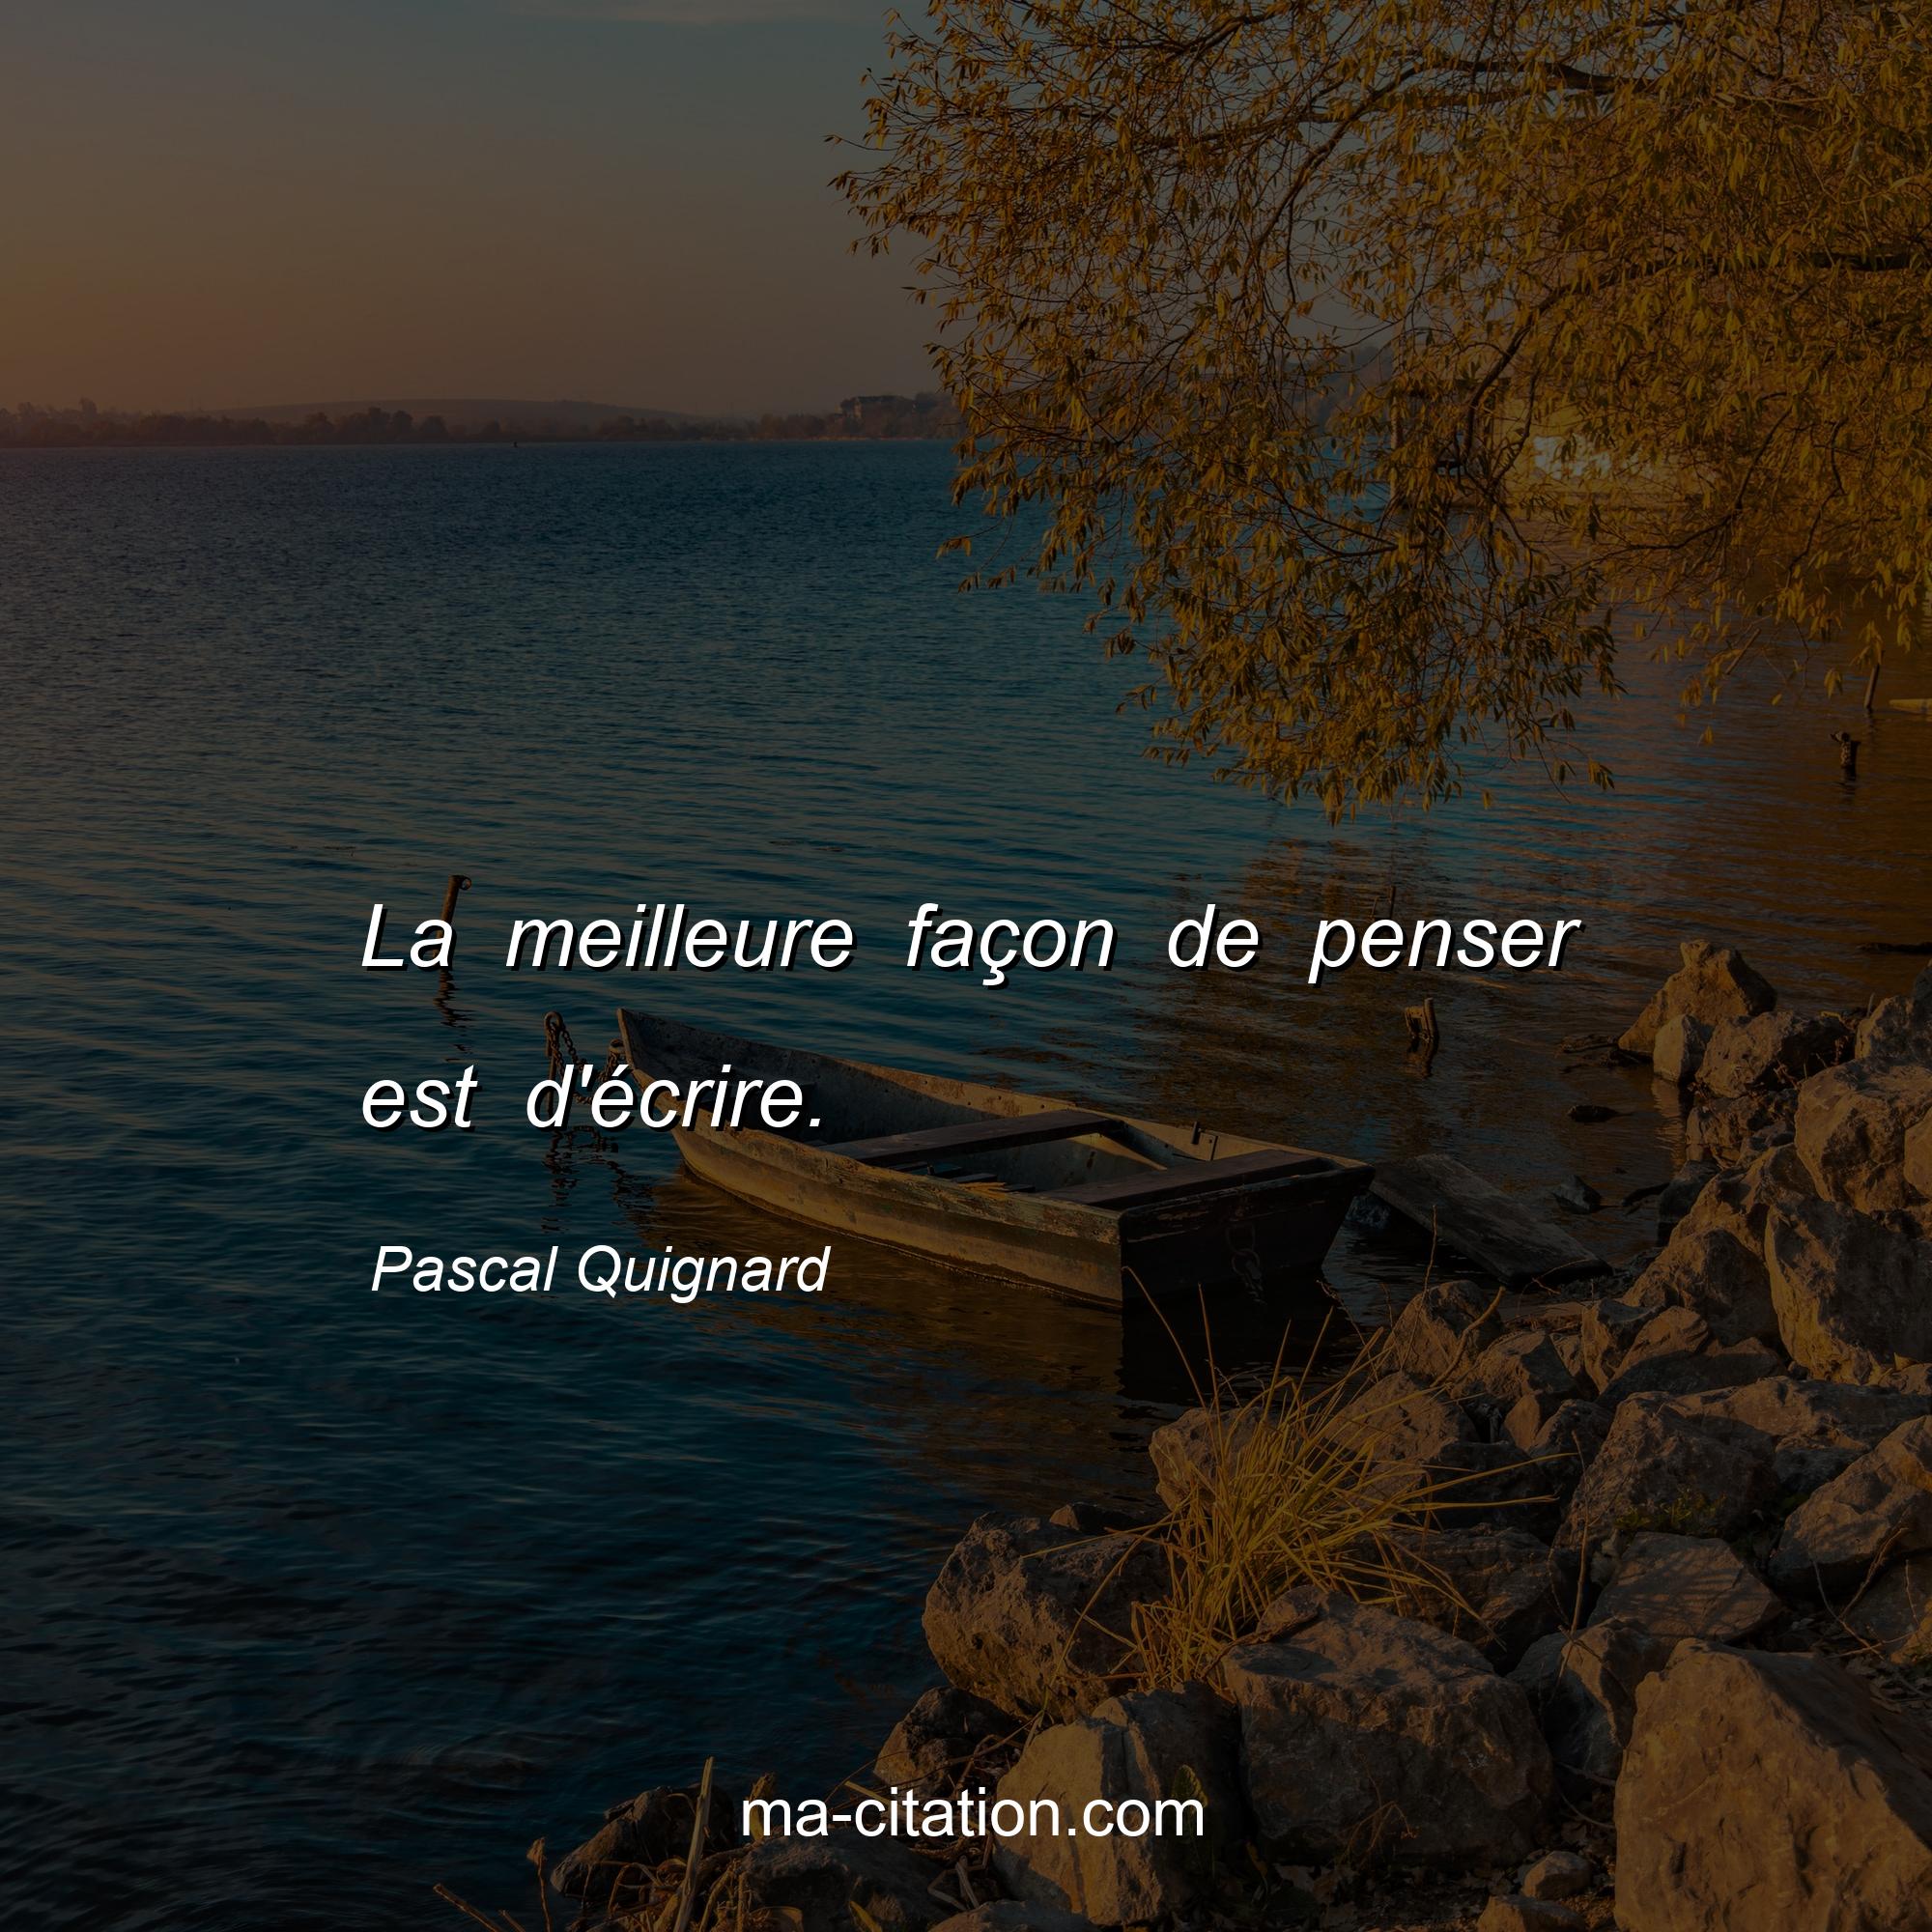 Pascal Quignard : La meilleure façon de penser est d'écrire.